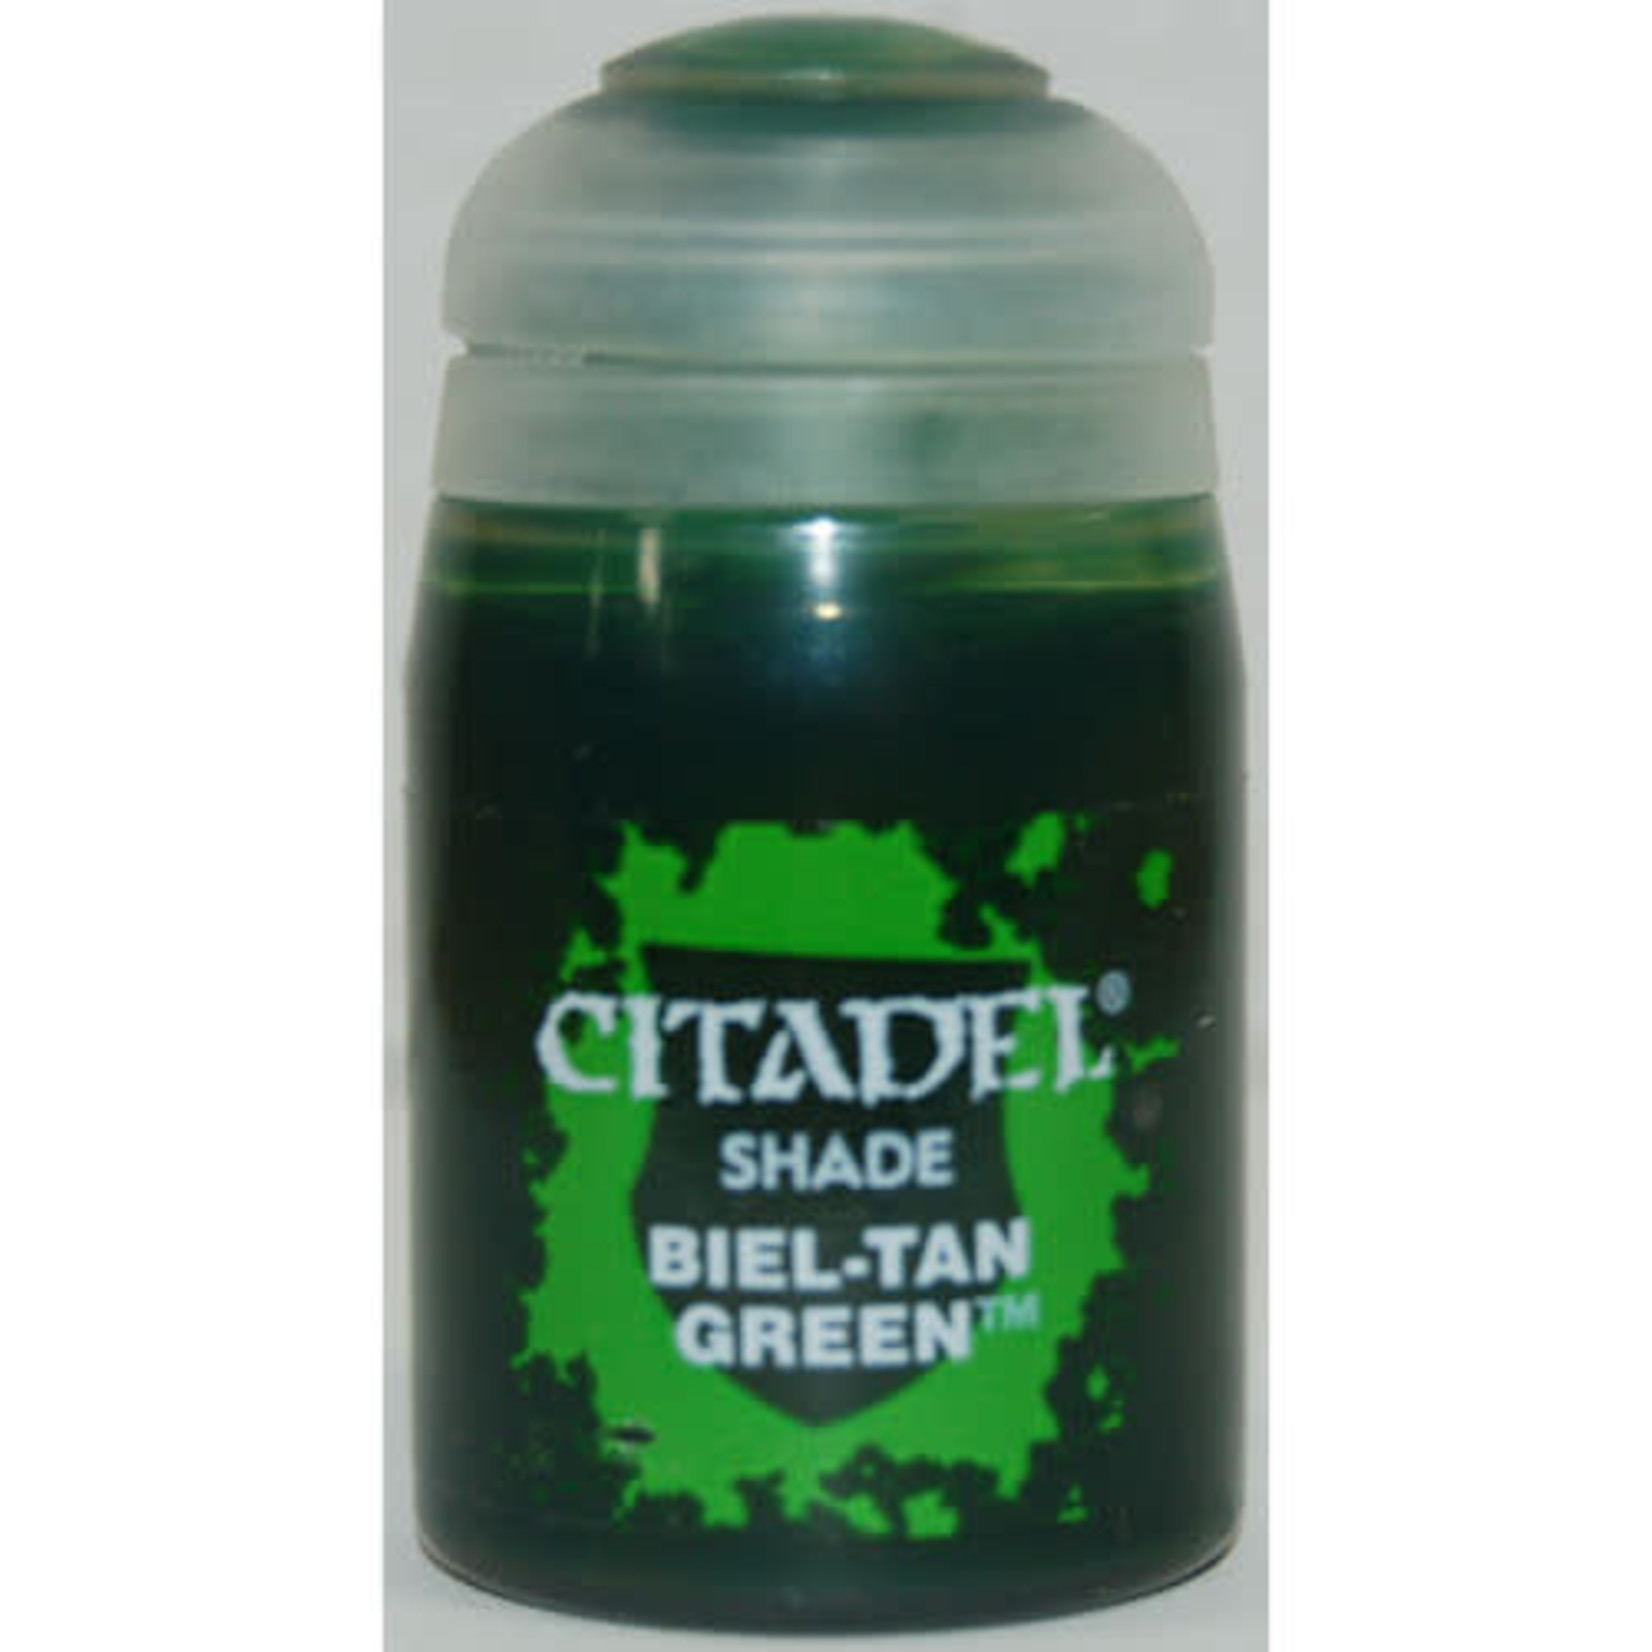 Citadel Citadel Paint - Shade: Biel-tan Green (24 ml)